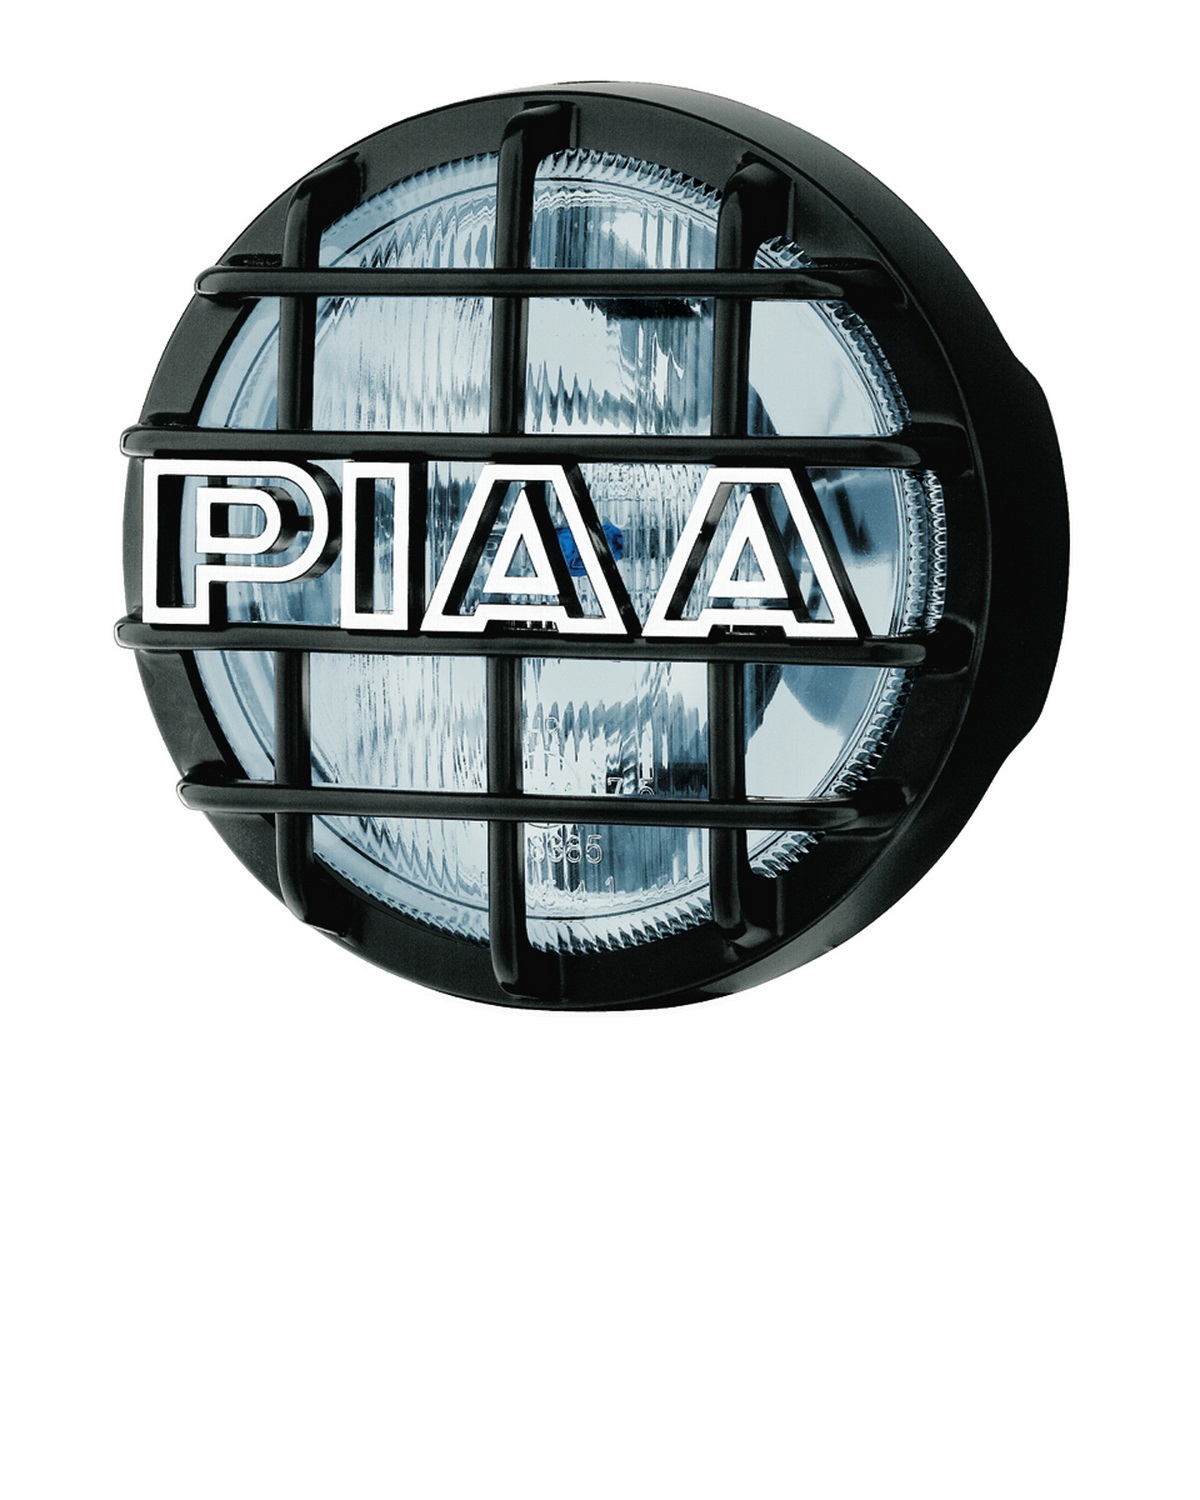 PIAA PIAA 5462 540 Xtreme White Driving Lamp Kit